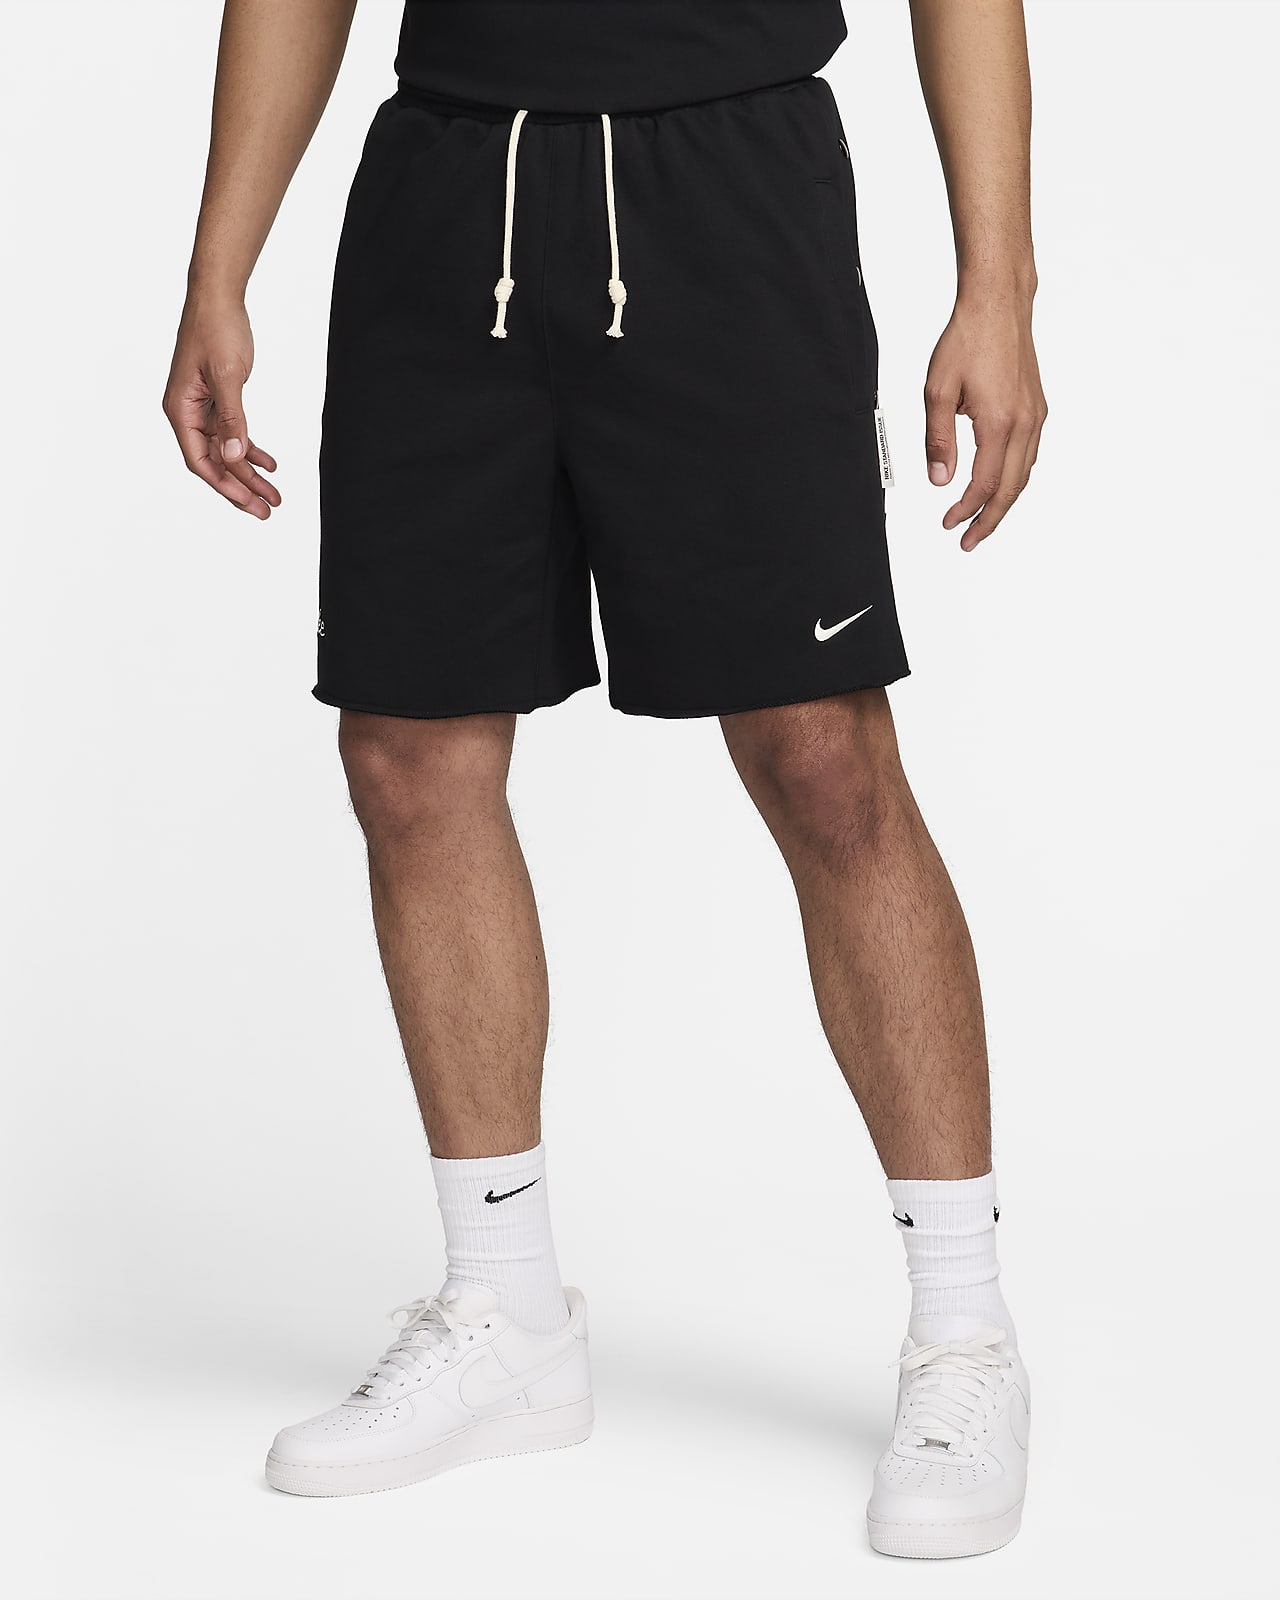 Calções de basquetebol Dri-FIT de 20 cm Nike Standard Issue para homem